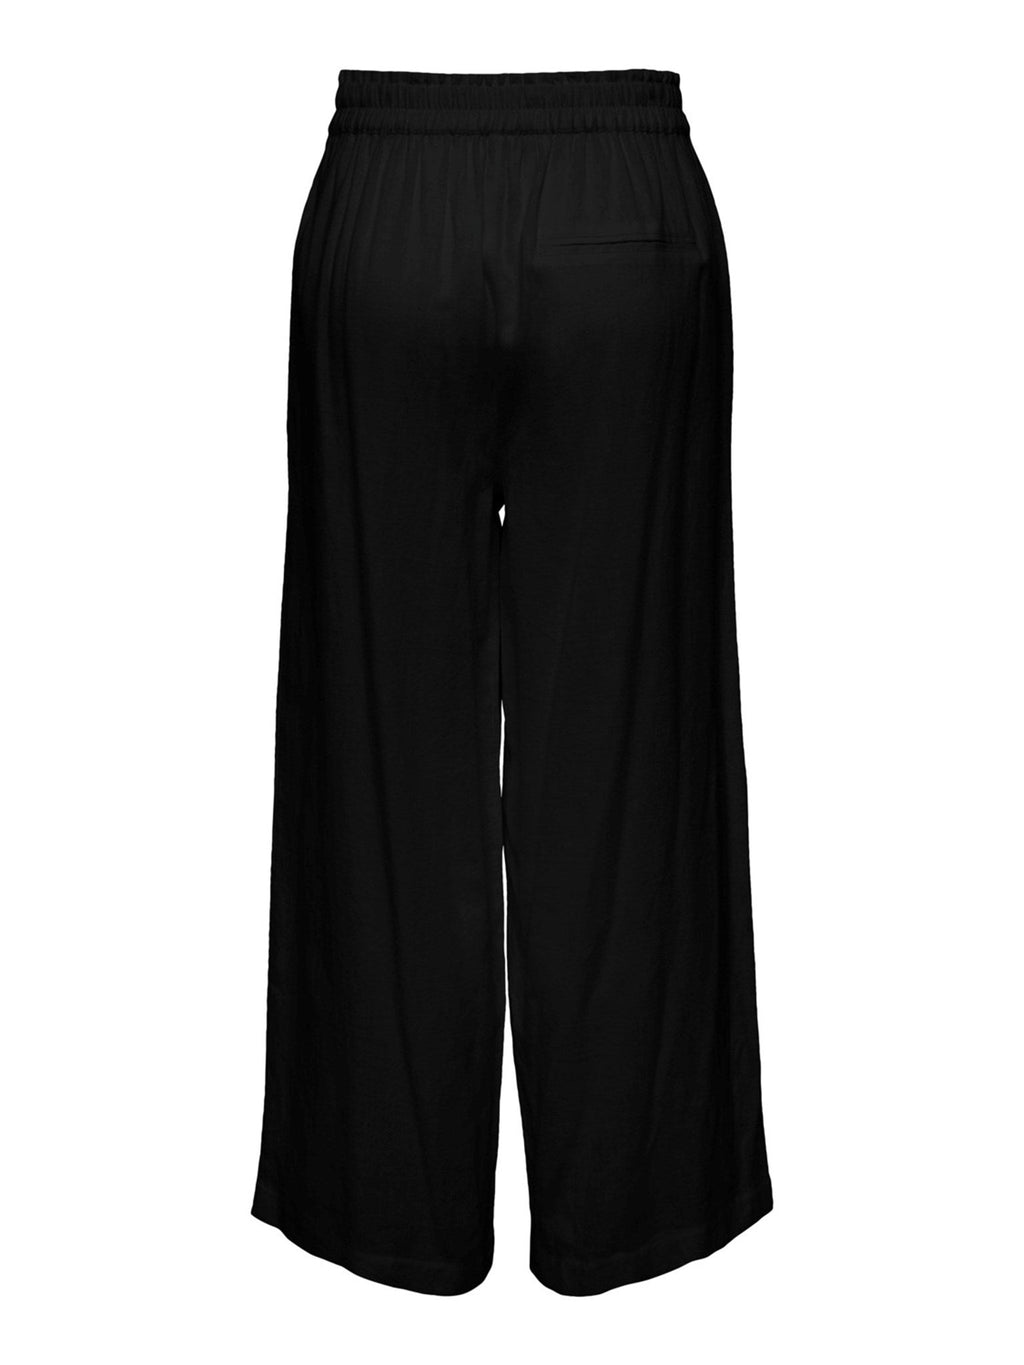 Tokyo High Waist Linen Pants - Black